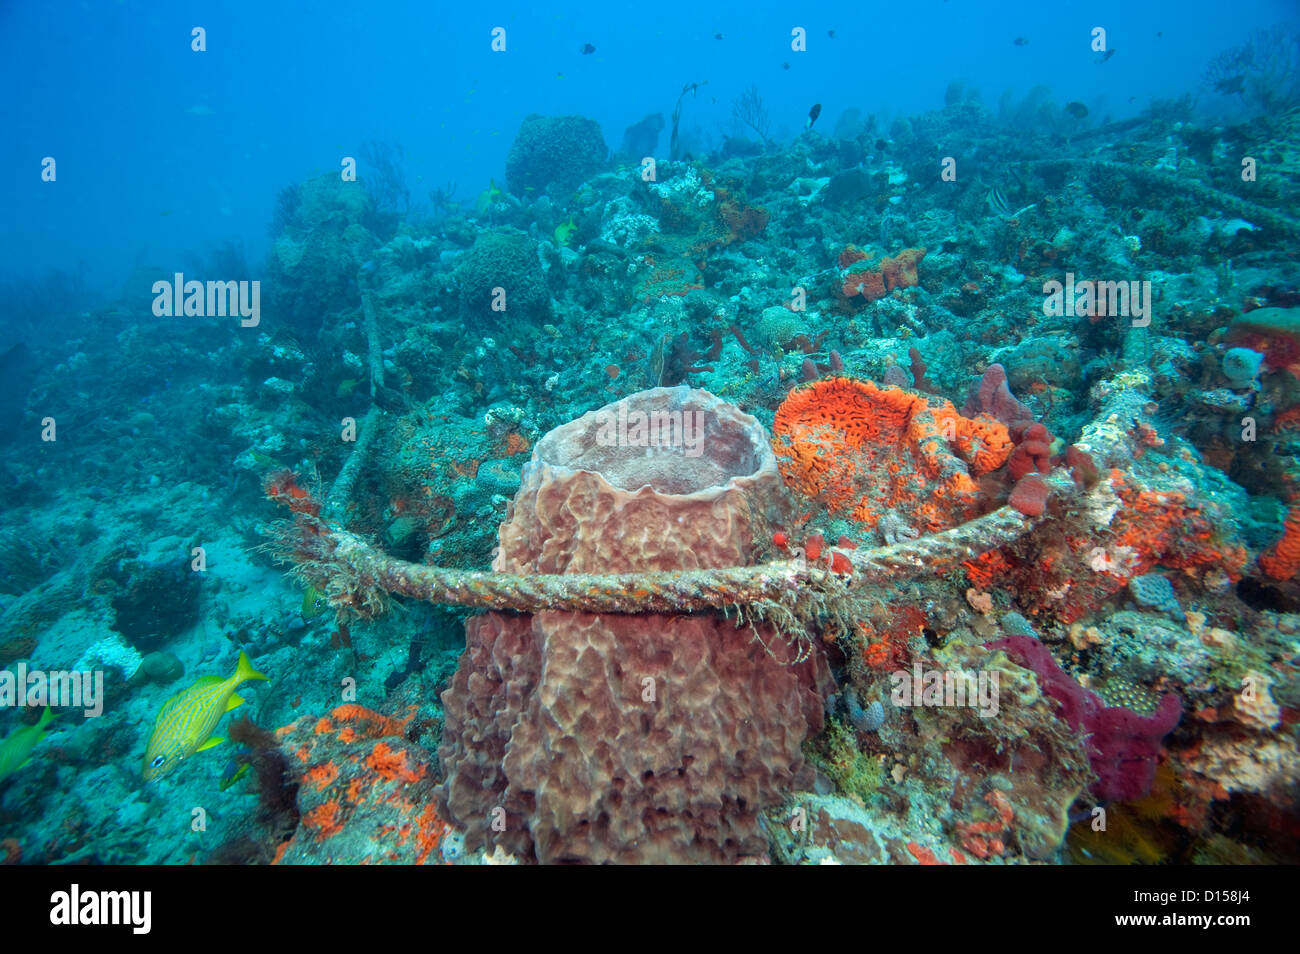 Eine ausrangierte Ankerleine schädigt empfindliche Schwämme und Korallen am Riff Breakers in Palm Beach County, Florida, Vereinigte Staaten von Amerika. Stockfoto